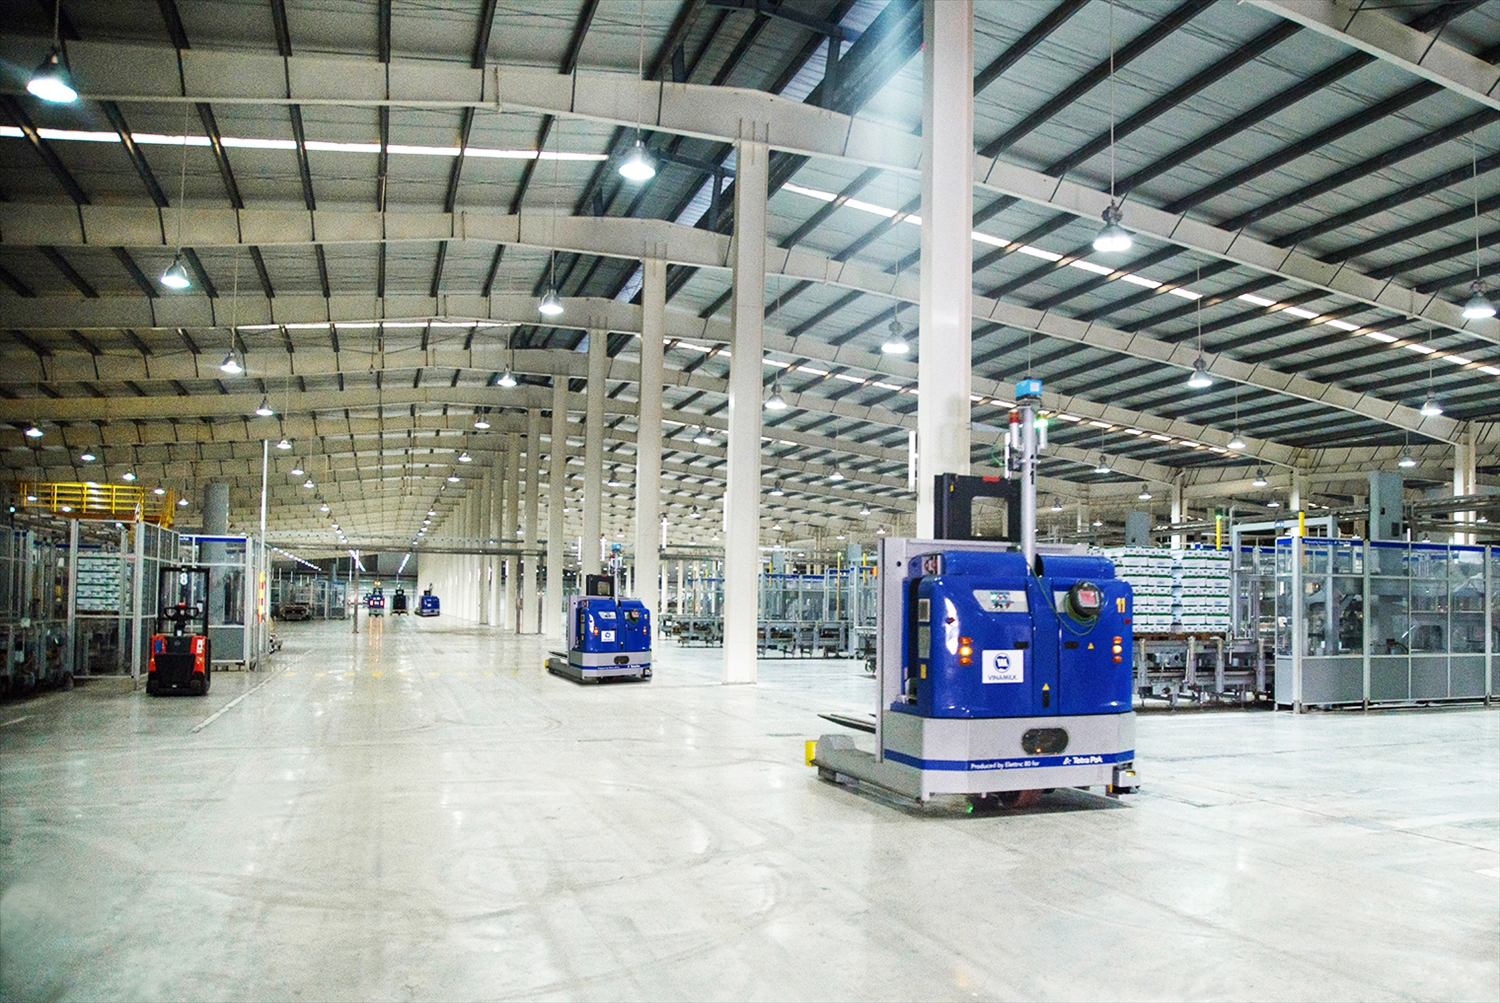 Hệ thống robot LGV trong nhà máy được vận hành tự động và đồng bộ, giúp tối ưu hóa năng suất và kiểm soát chất lượng sản phẩm nghiêm ngặt